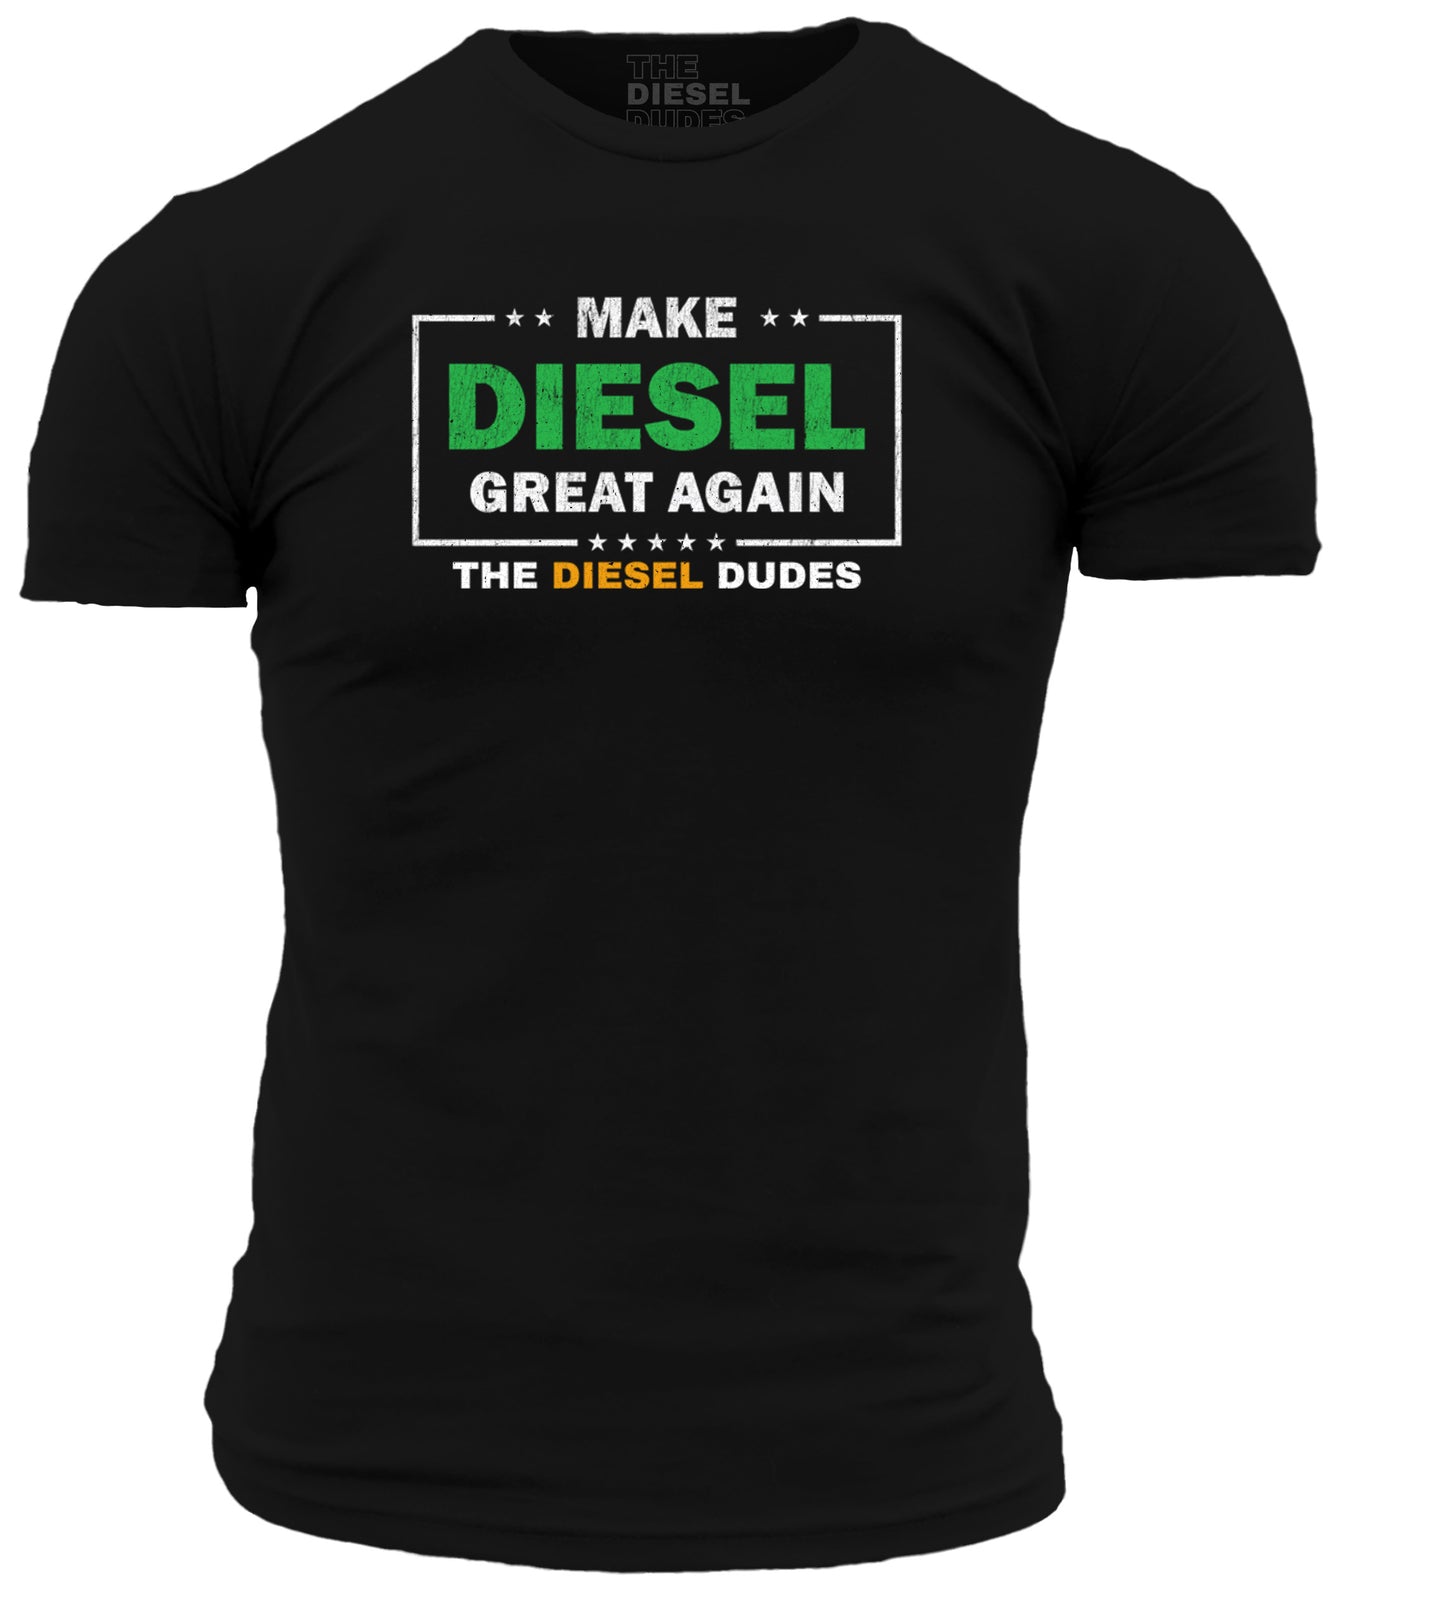 MDGA (Make Diesel Great Again)